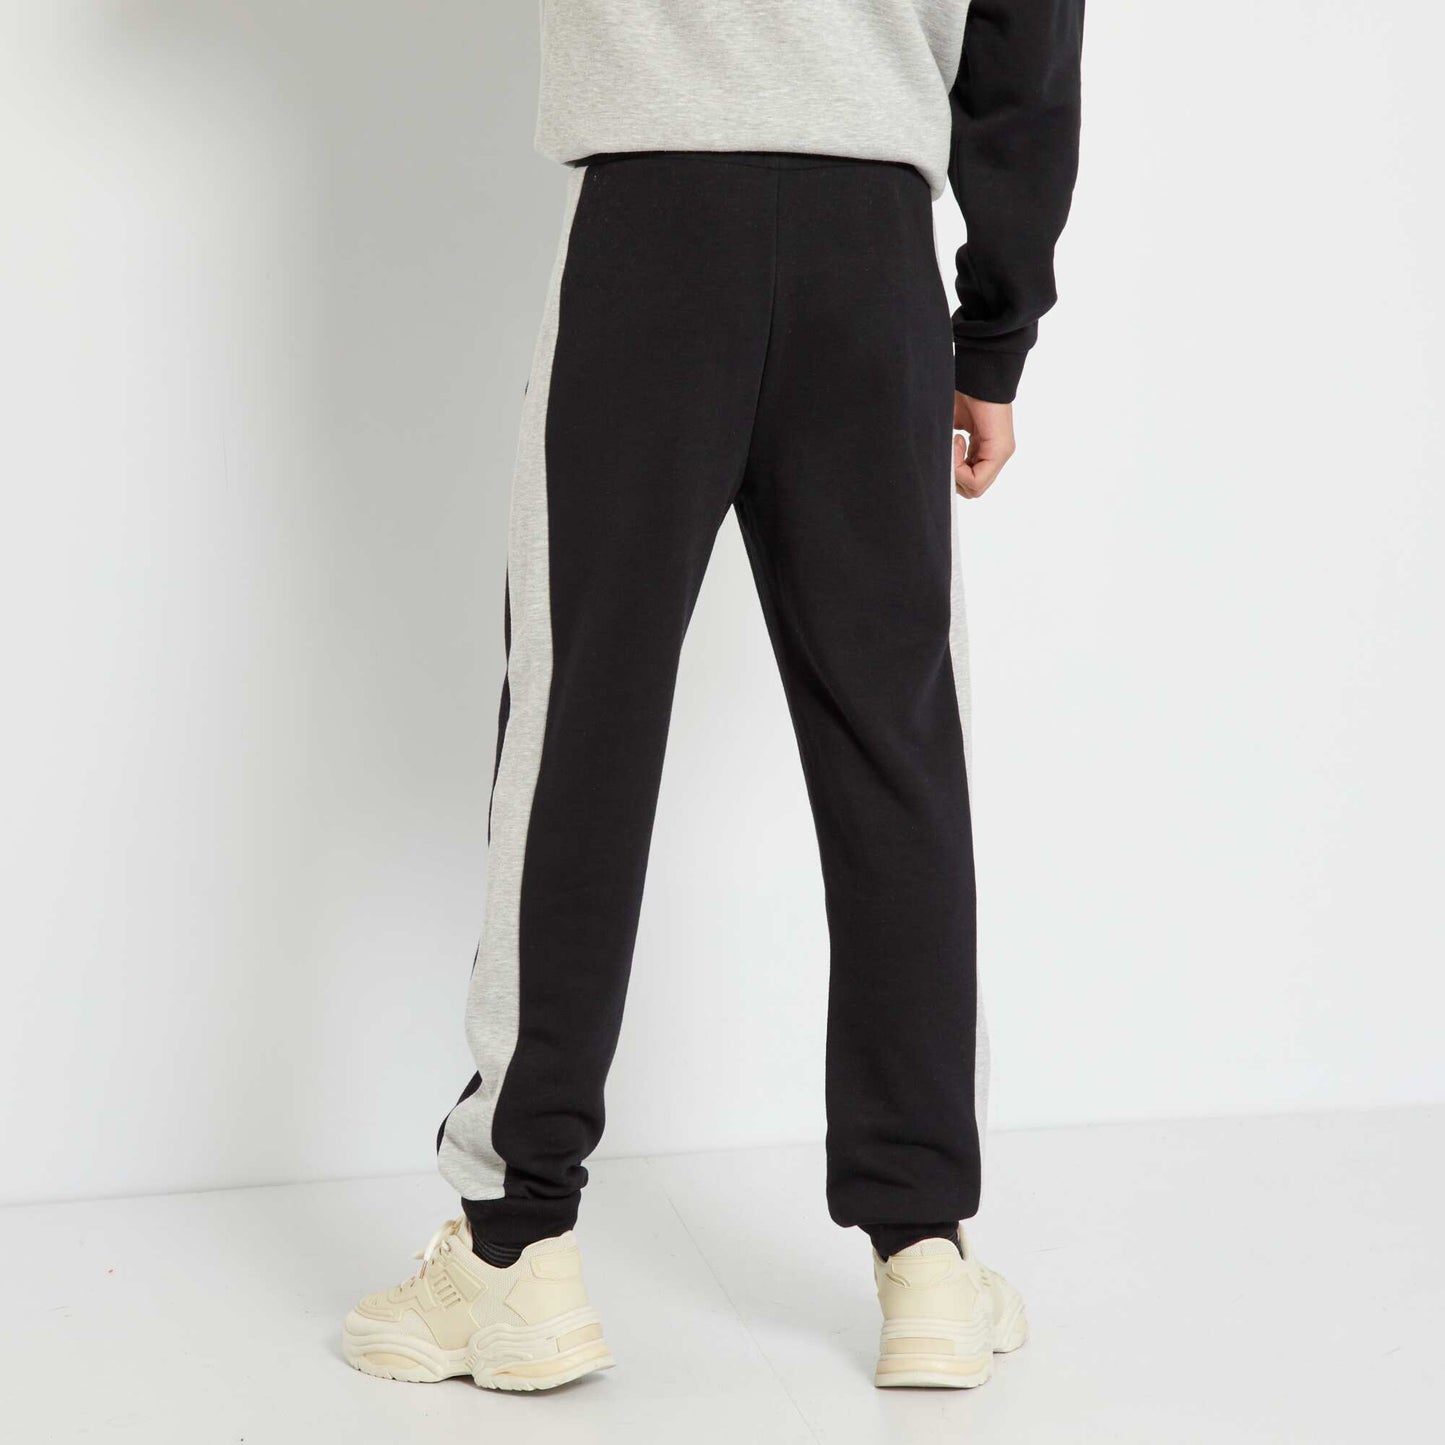 Pantalon de jogging avec bandes contrastantes noir